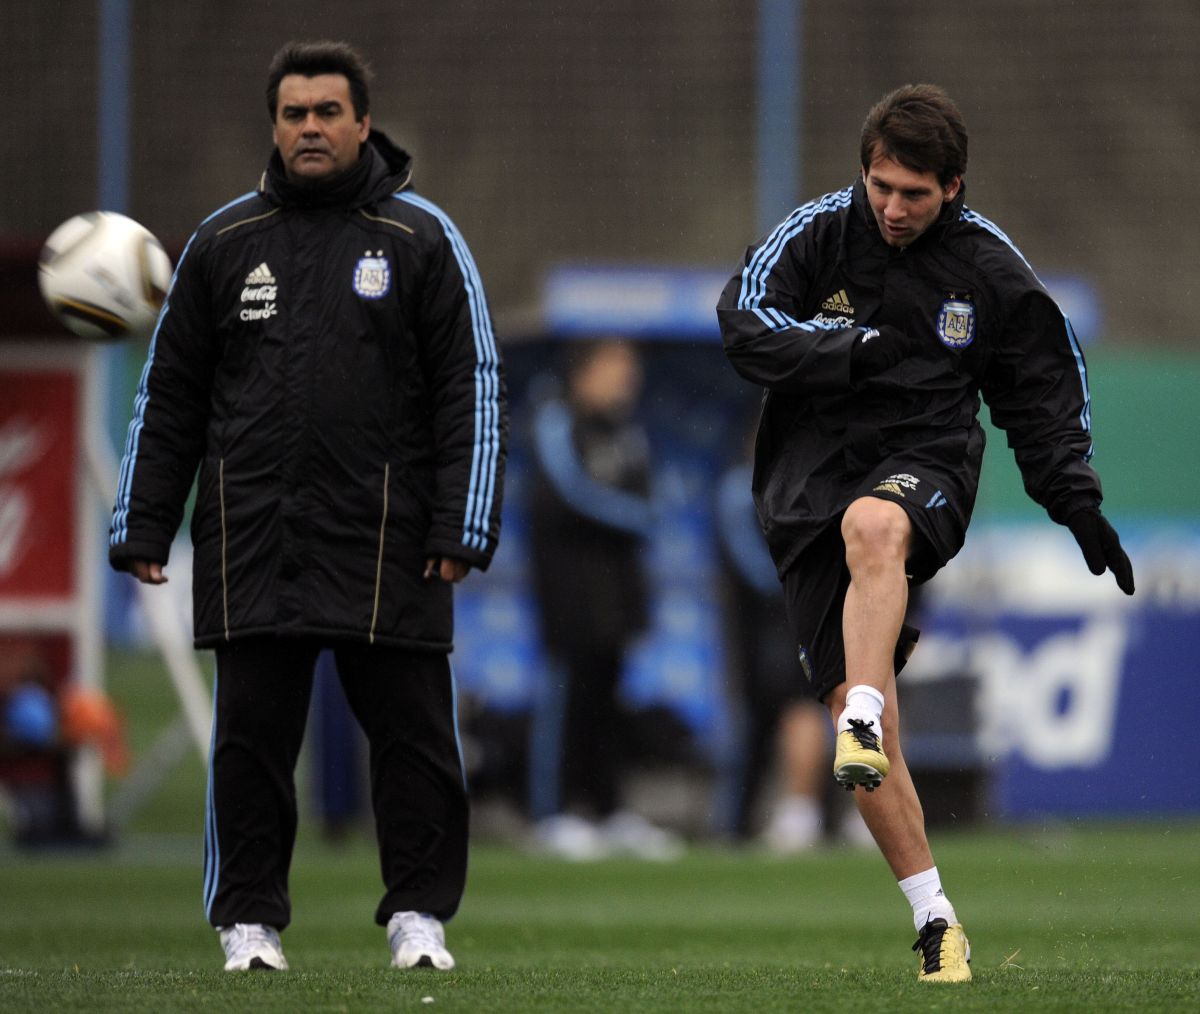 José Luis Brown, asistente del DT, y Lionel Messi durante un entrenamiento de la Selección Argentina en el 2010.